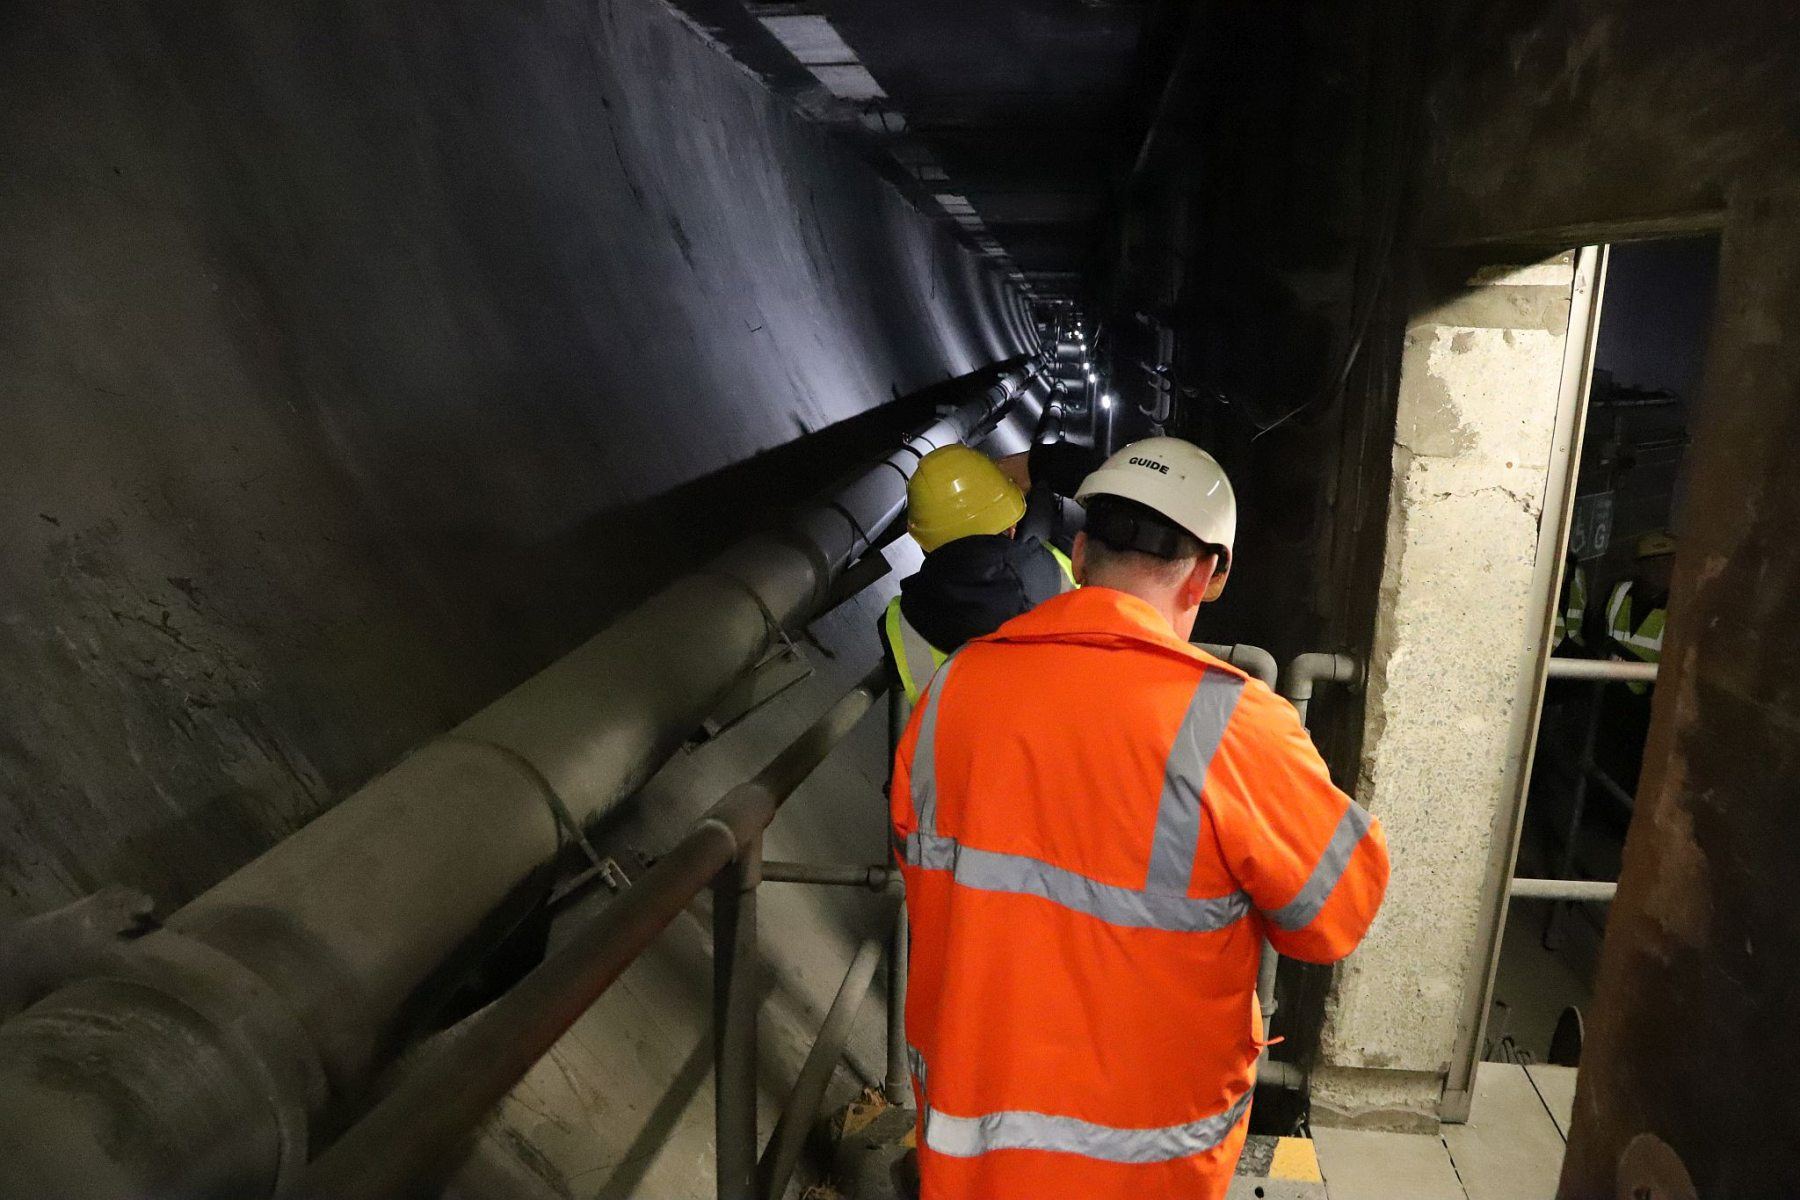 Liverpool Birkenhead Queensway Tunnel behind the scenes tour